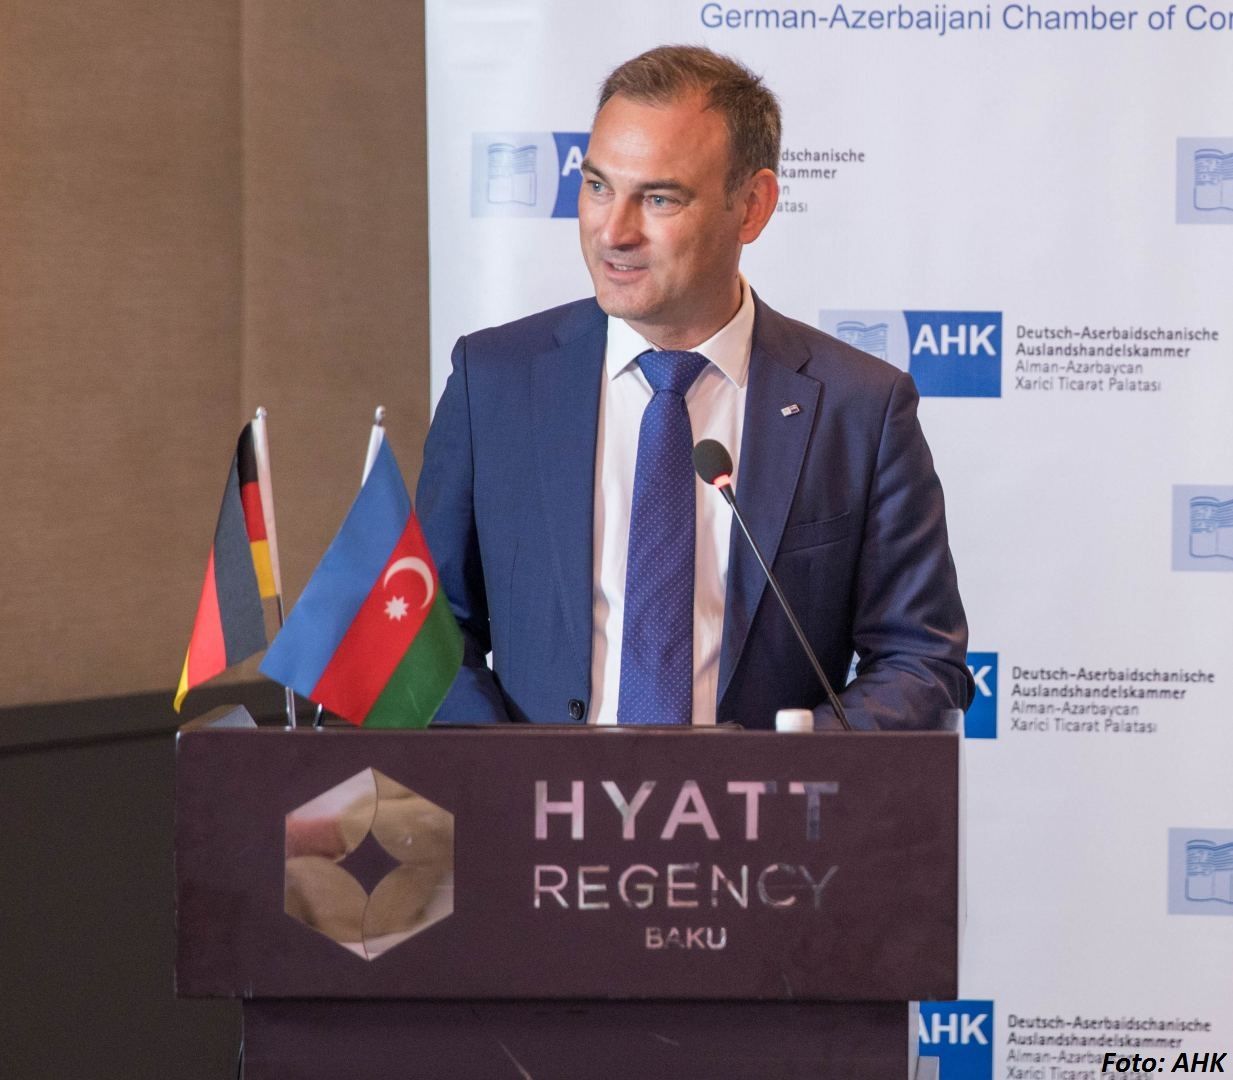 Deutschland will Exporte nach Aserbaidschan steigern - Leiter der Handelskammer